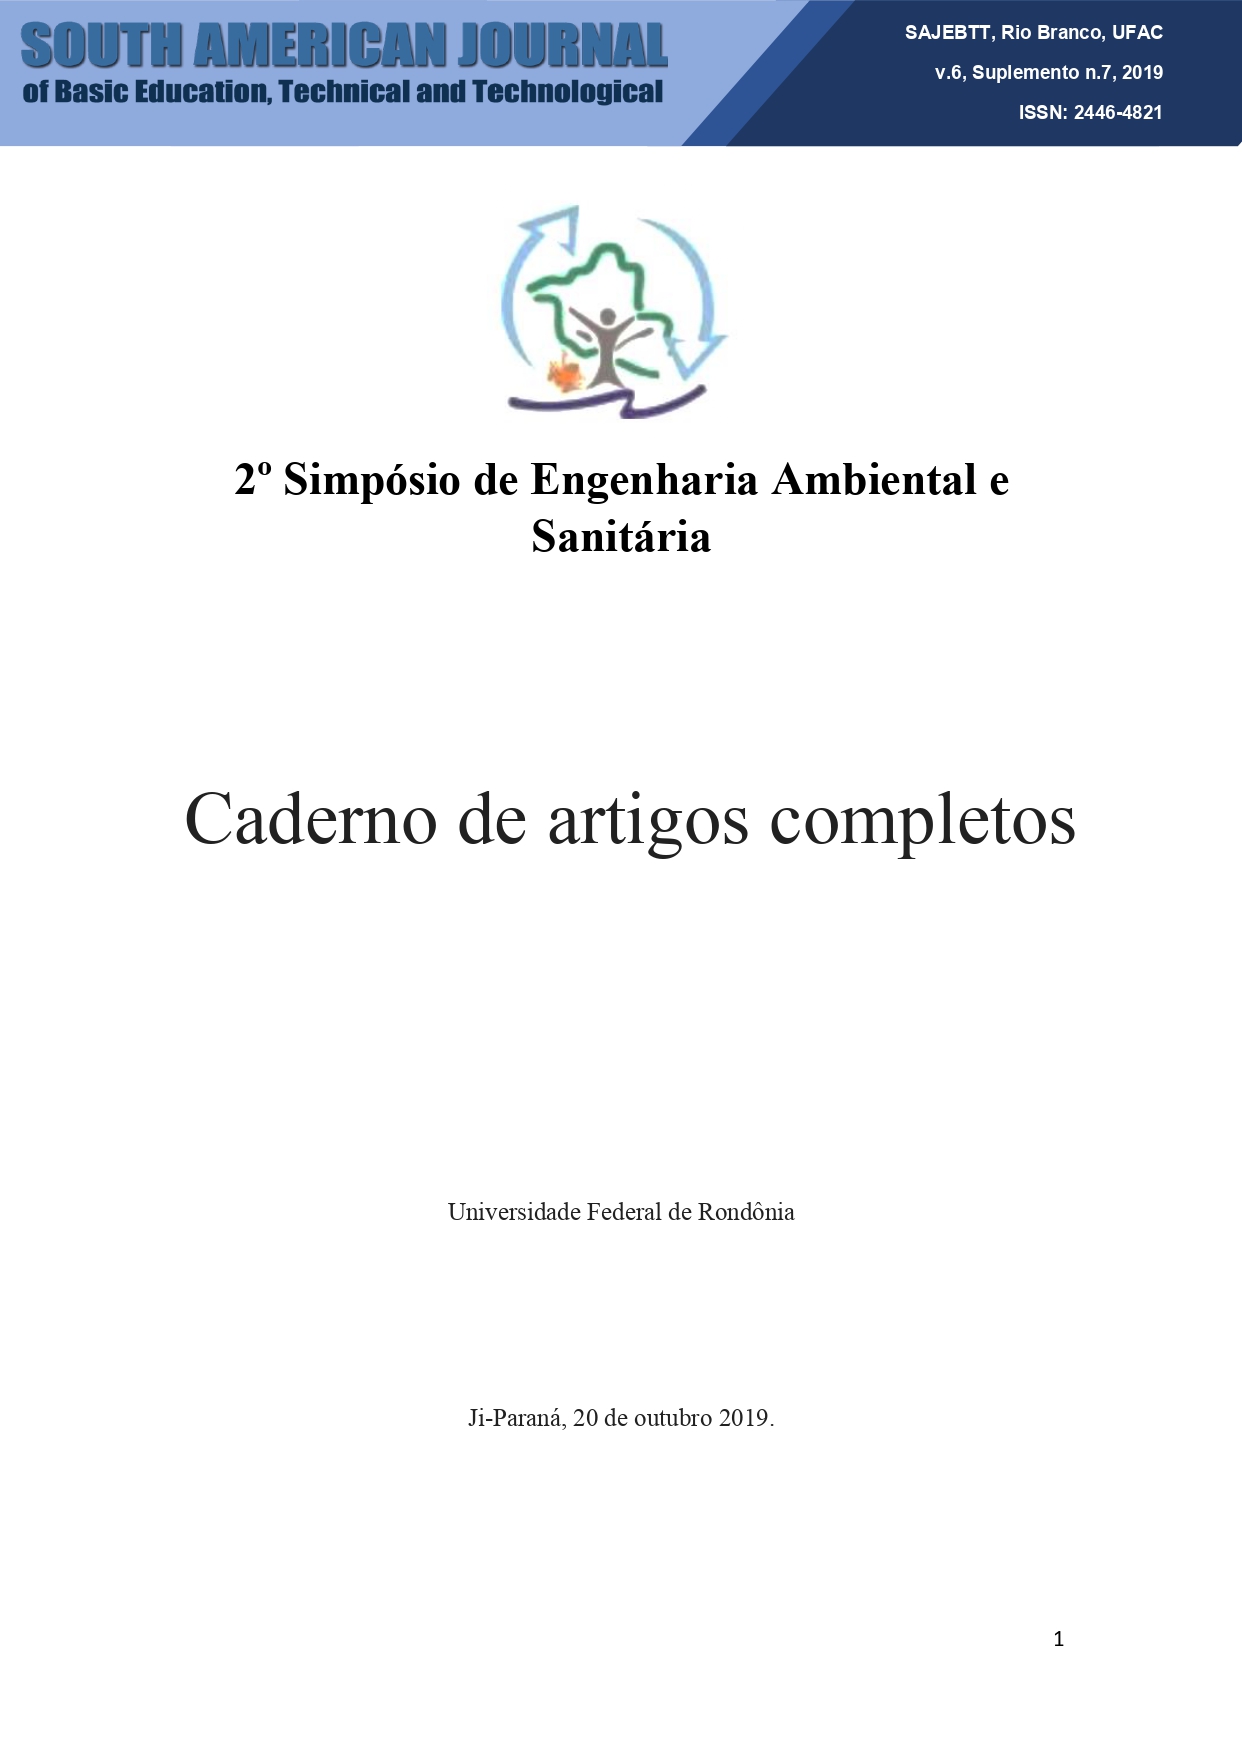 					View Vol. 6 No. Sup 7 (2019): Anais do 2º Simpósio de Engenharia Ambiental e Sanitária/UNIR/ Ji-Paraná
				